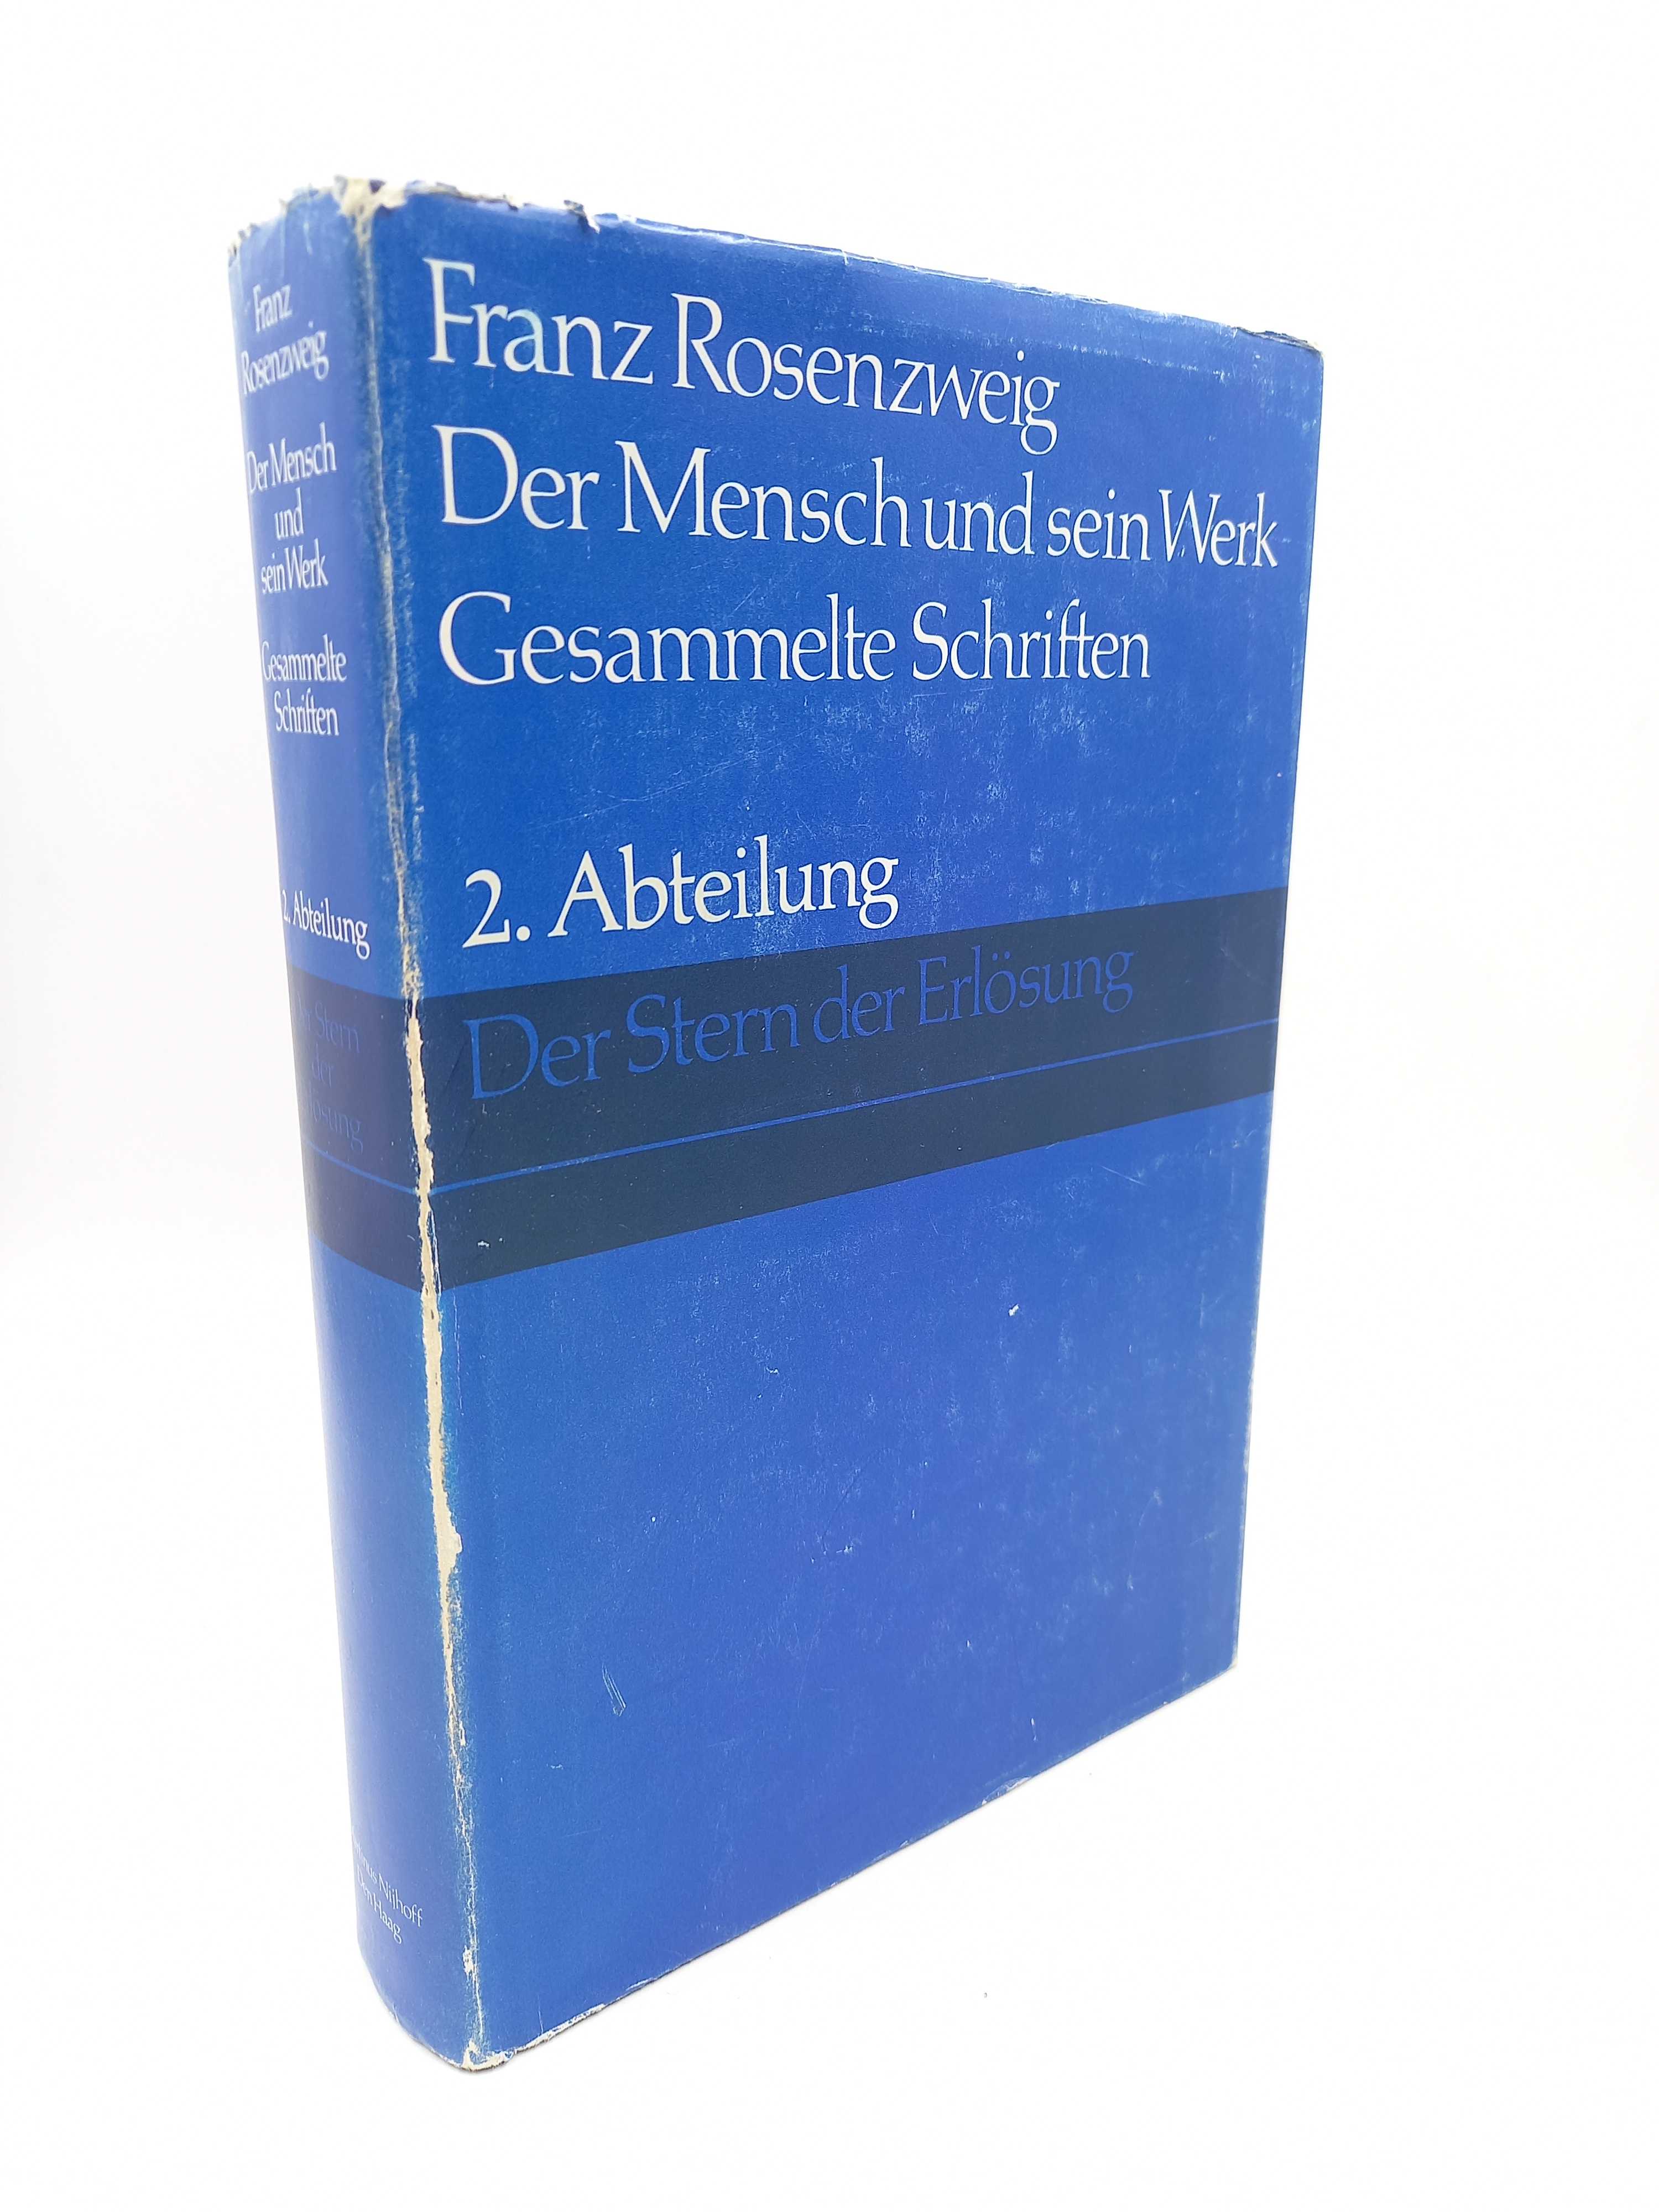 Der Stern der Erlösung (Der Mensch und sein Werk; Gesammelte Schriften, II). Mit einer Einführung von Reinhold Mayer - Rosenzweig, Franz -